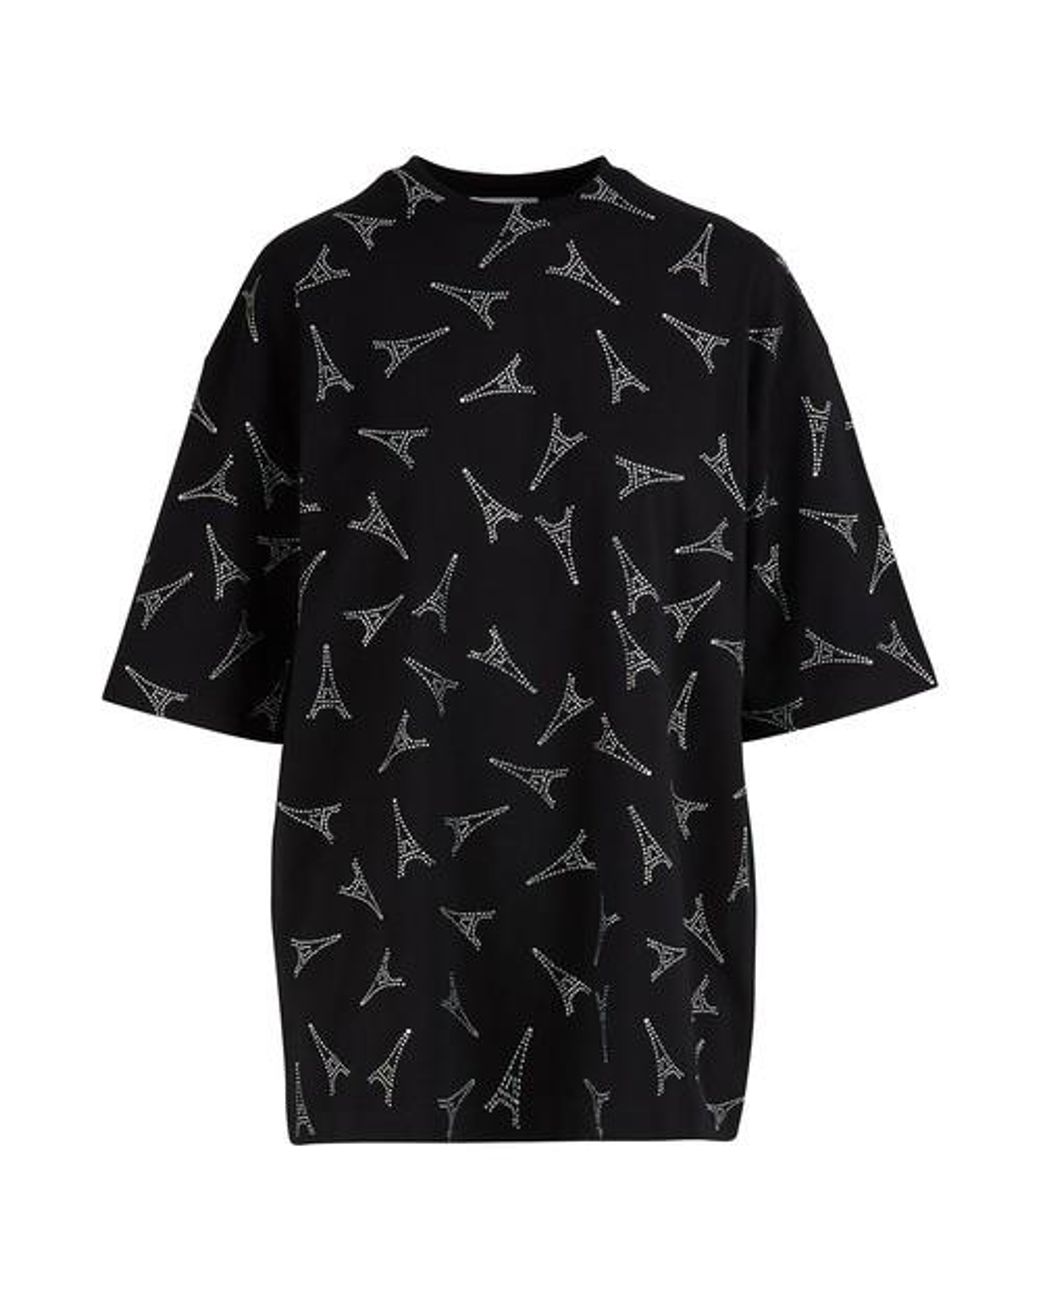 Balenciaga Eiffel Tower T-shirt in Black | Lyst